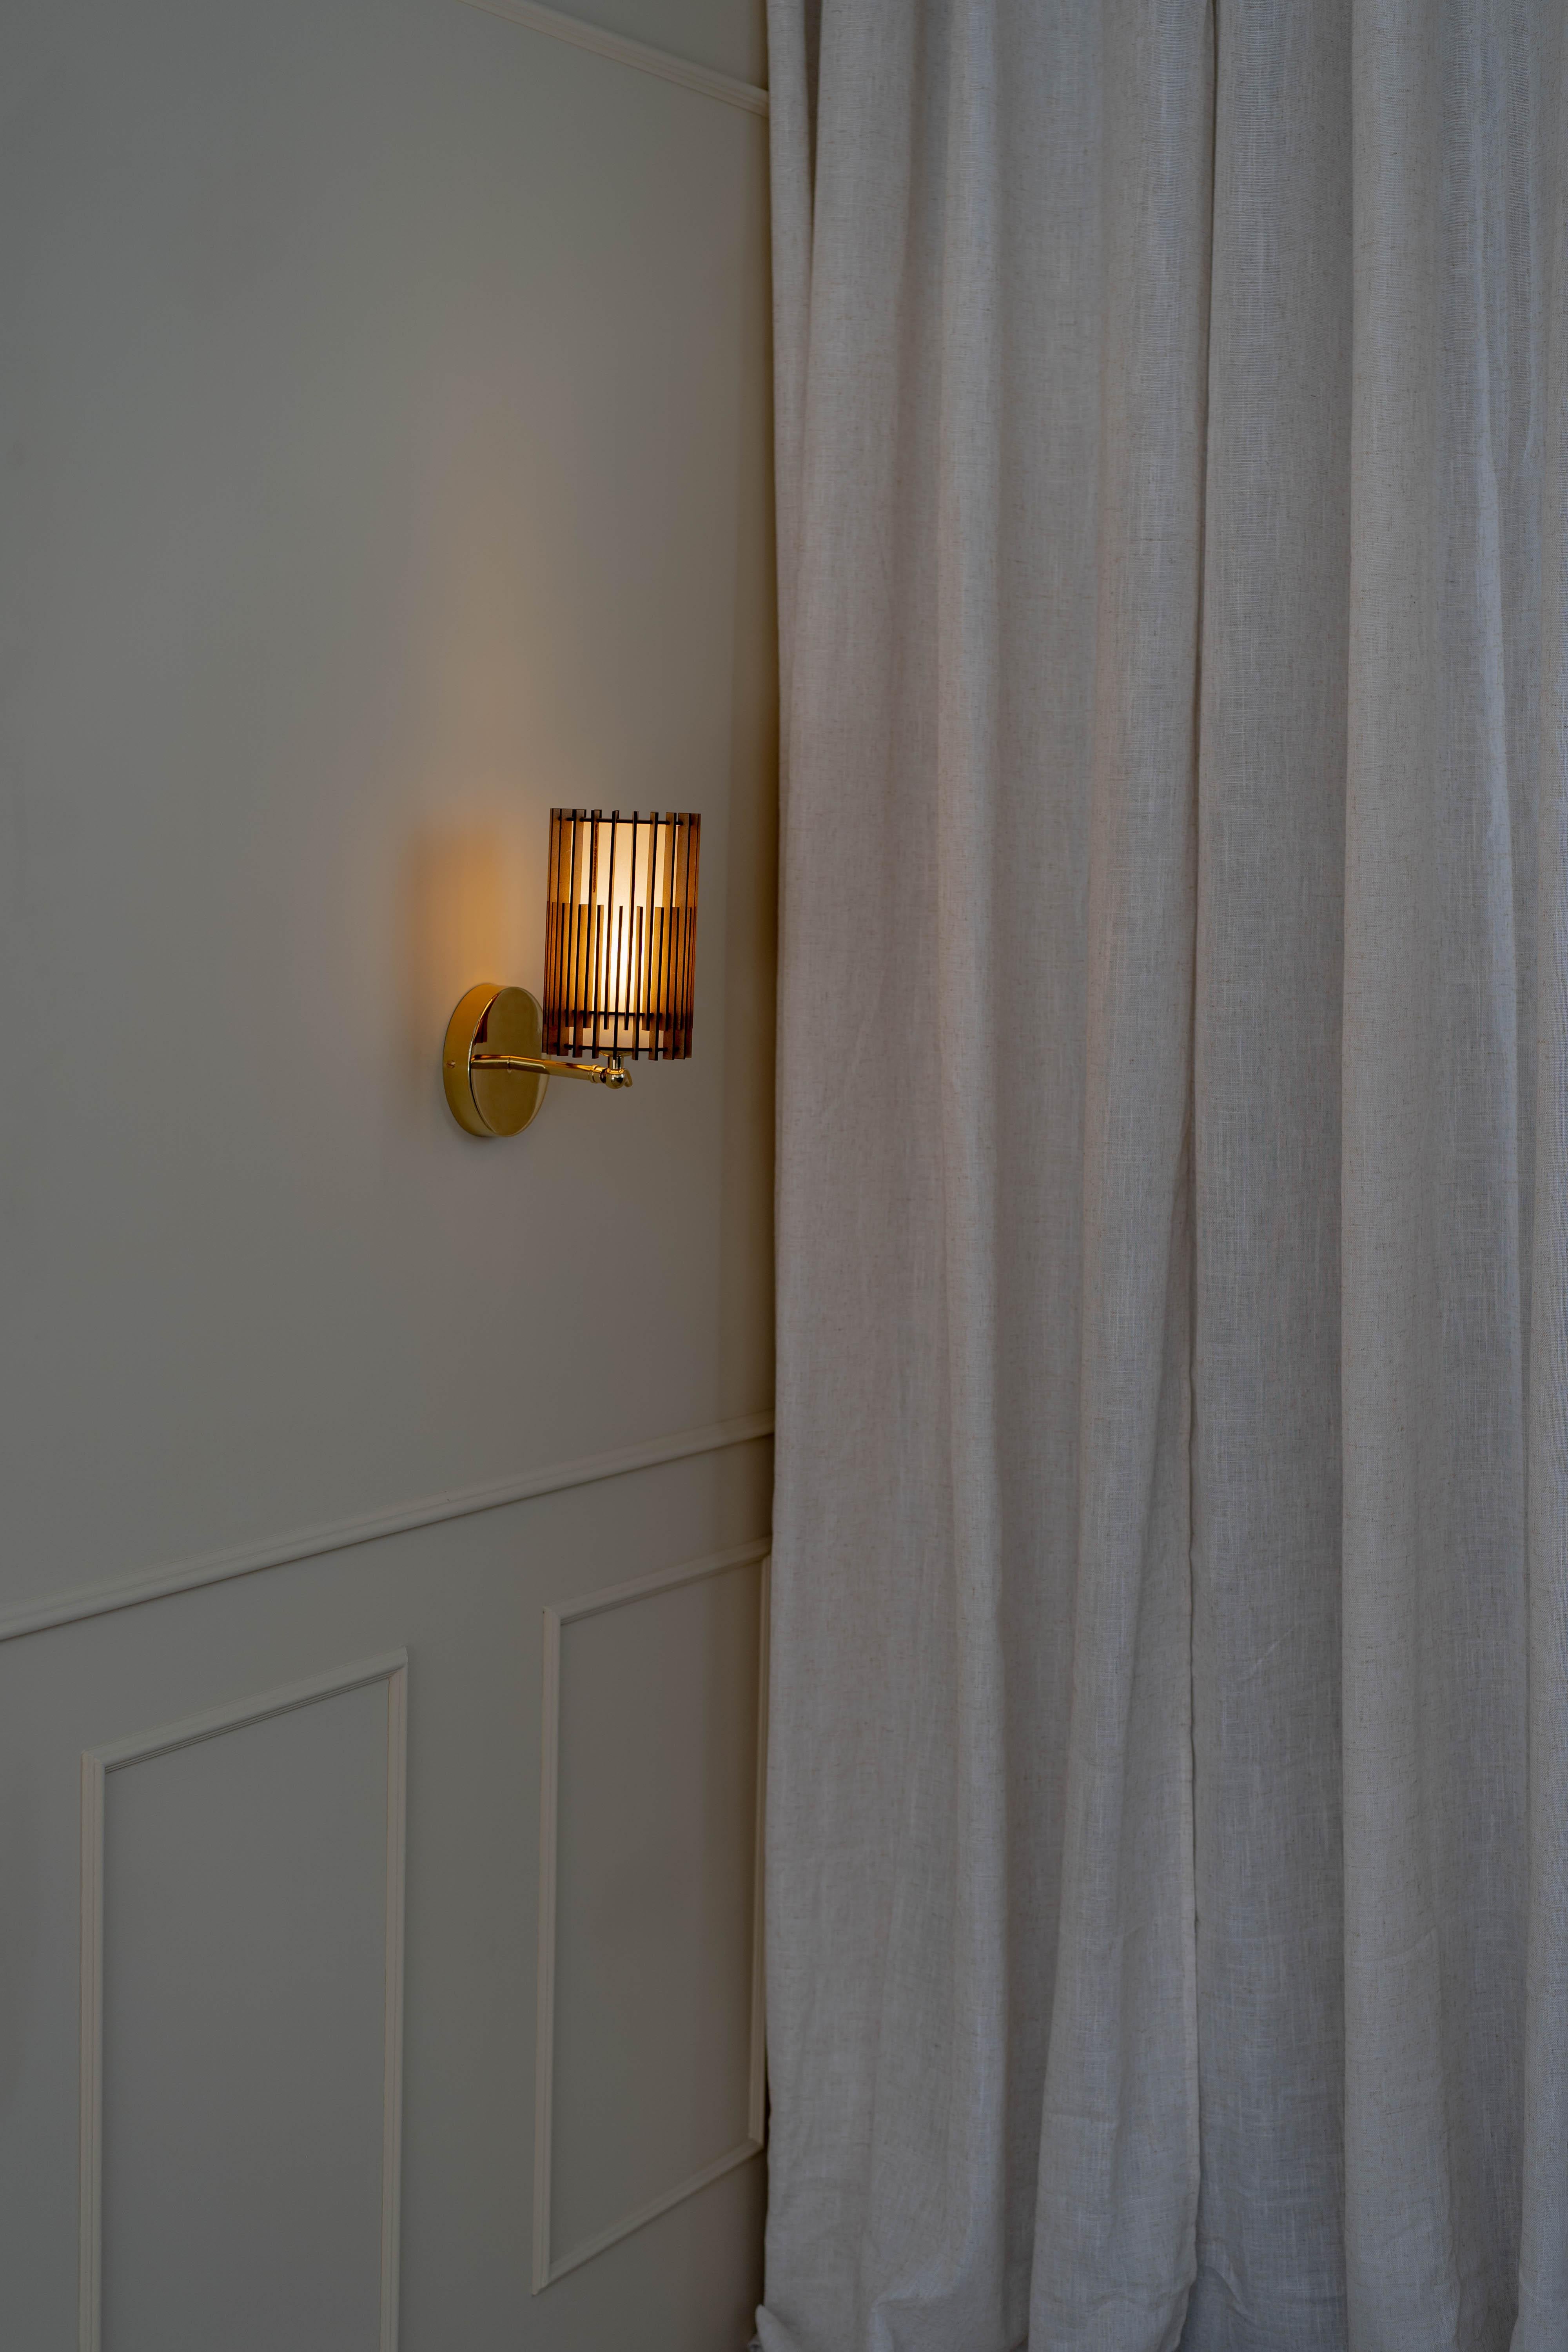 Les lampes SUAU sont conçues et fabriquées par Mediterranean Objects à Barcelone, en Espagne. 

Elles sont dotées d'un abat-jour extérieur composé de lattes de bois MDF, découpées au laser et assemblées une à une, créant ainsi deux textures